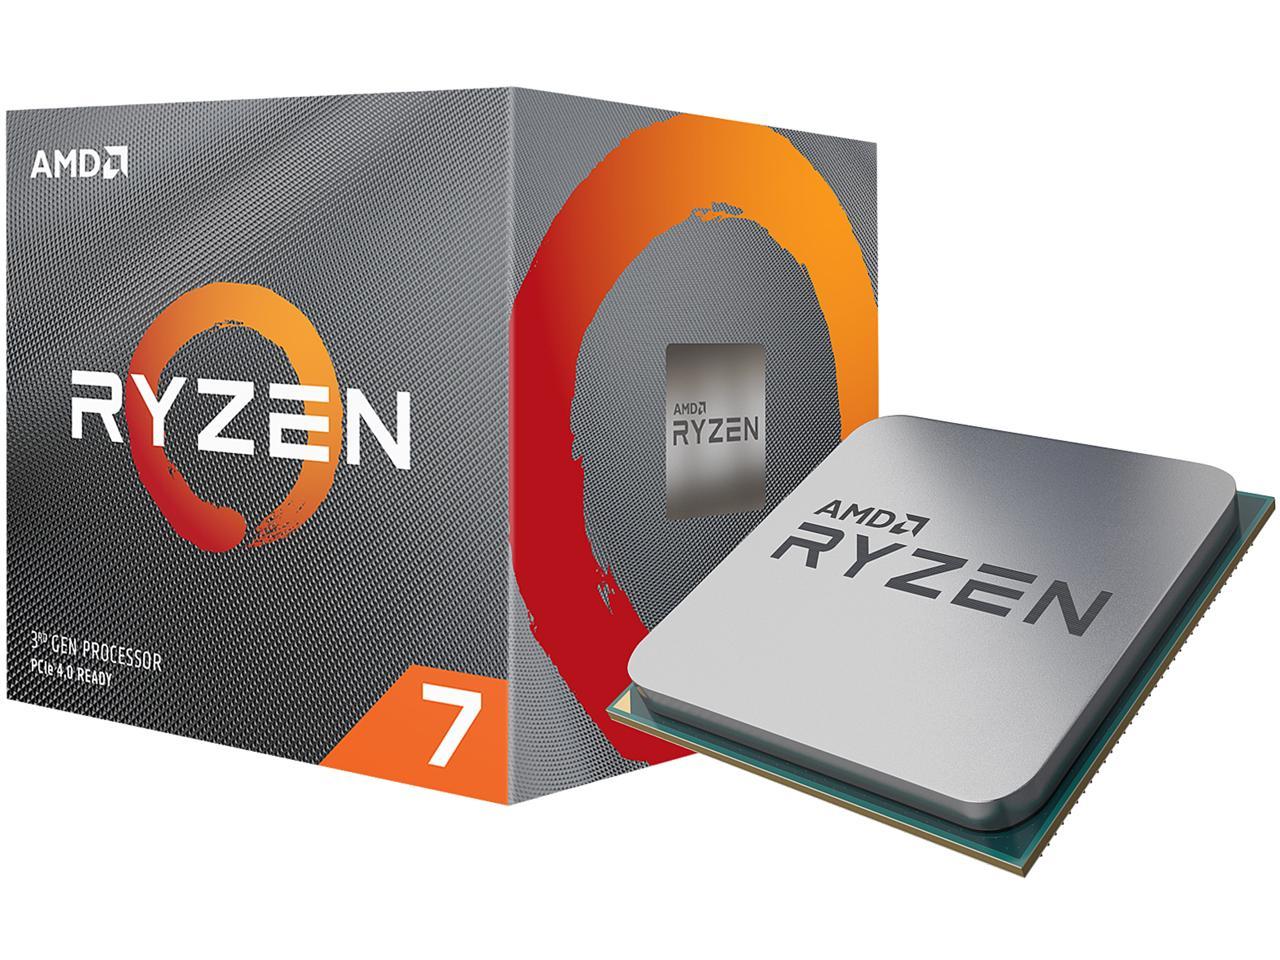 Ryzen 7 3700x Pro Online Sales, UP TO 64% OFF | www.ingeniovirtual.com